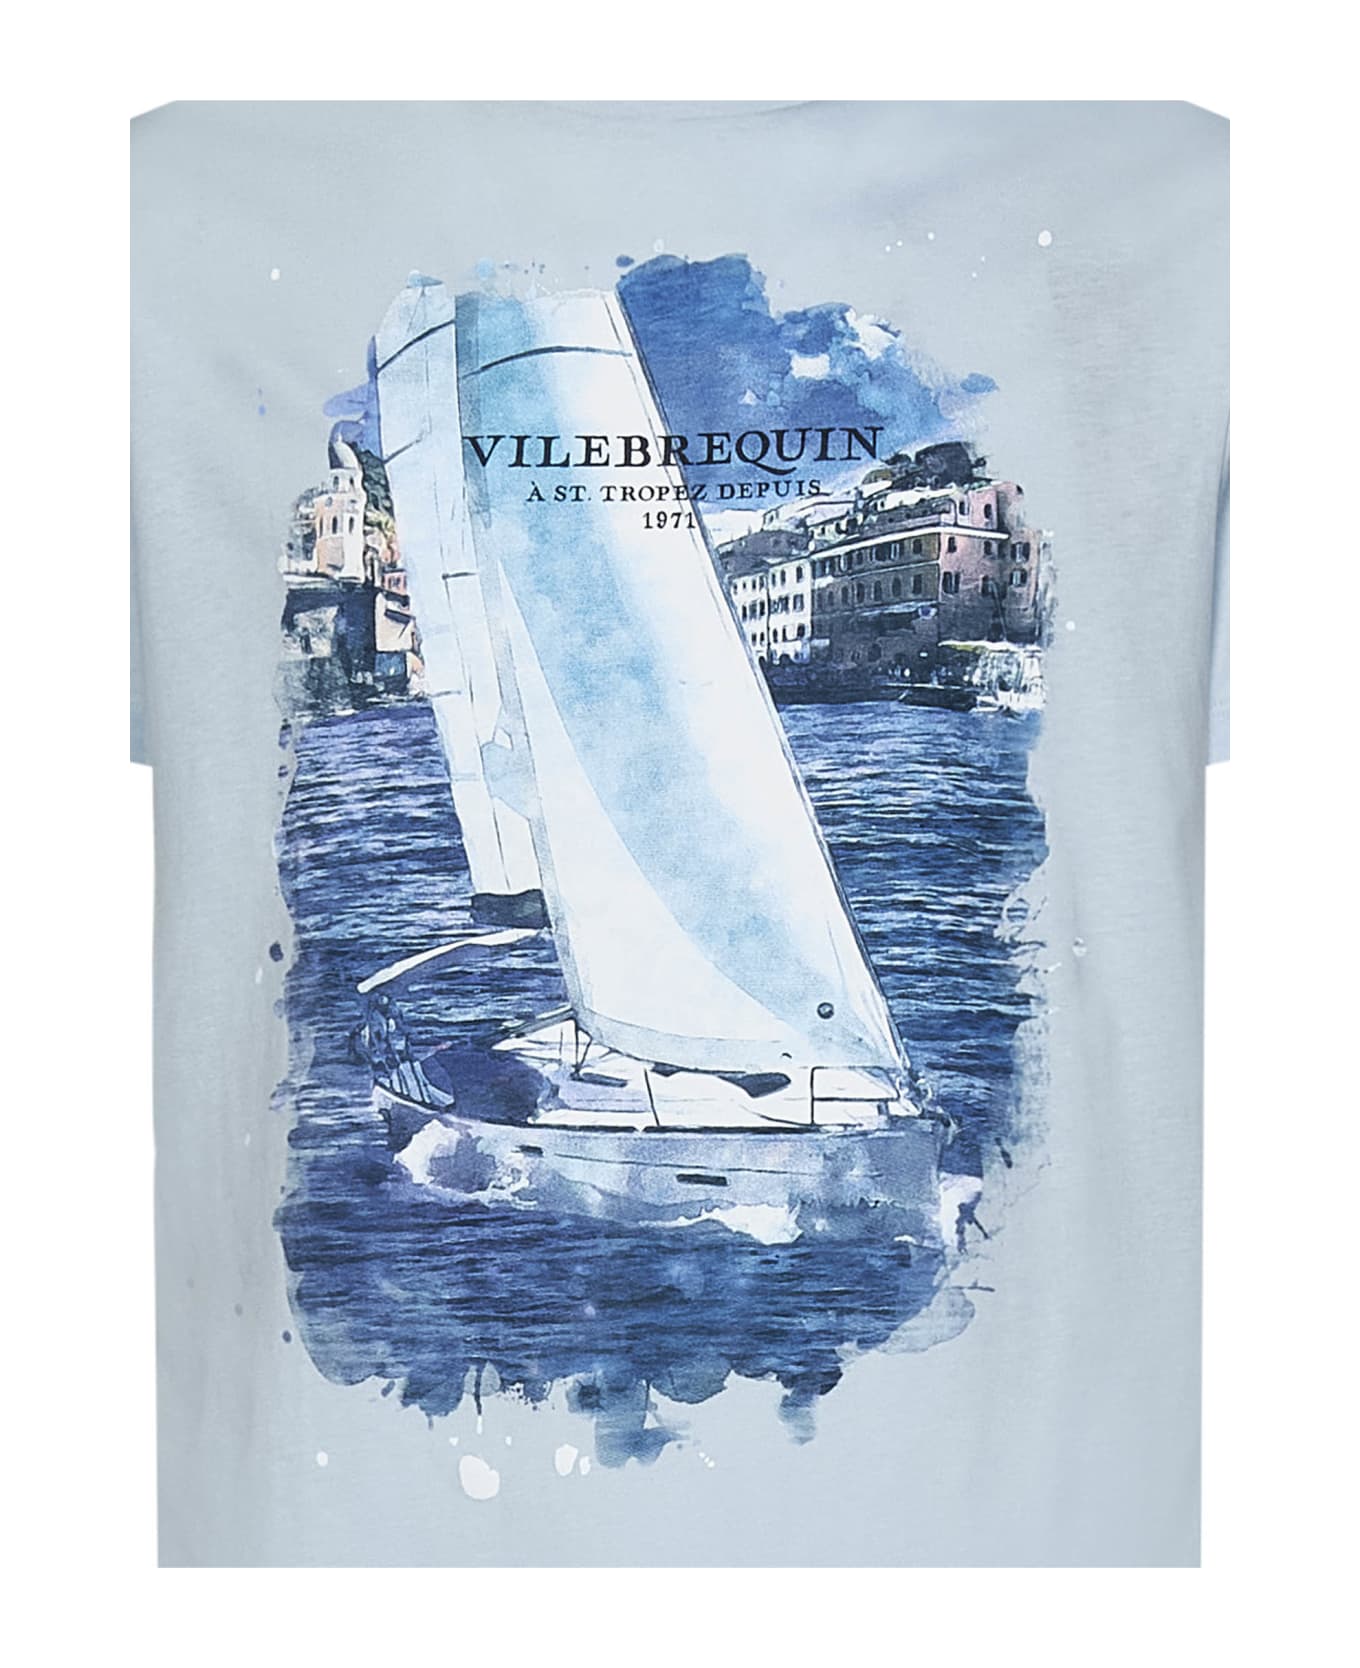 Vilebrequin White Sailing Boat T-shirt - Azzurro Chiaro